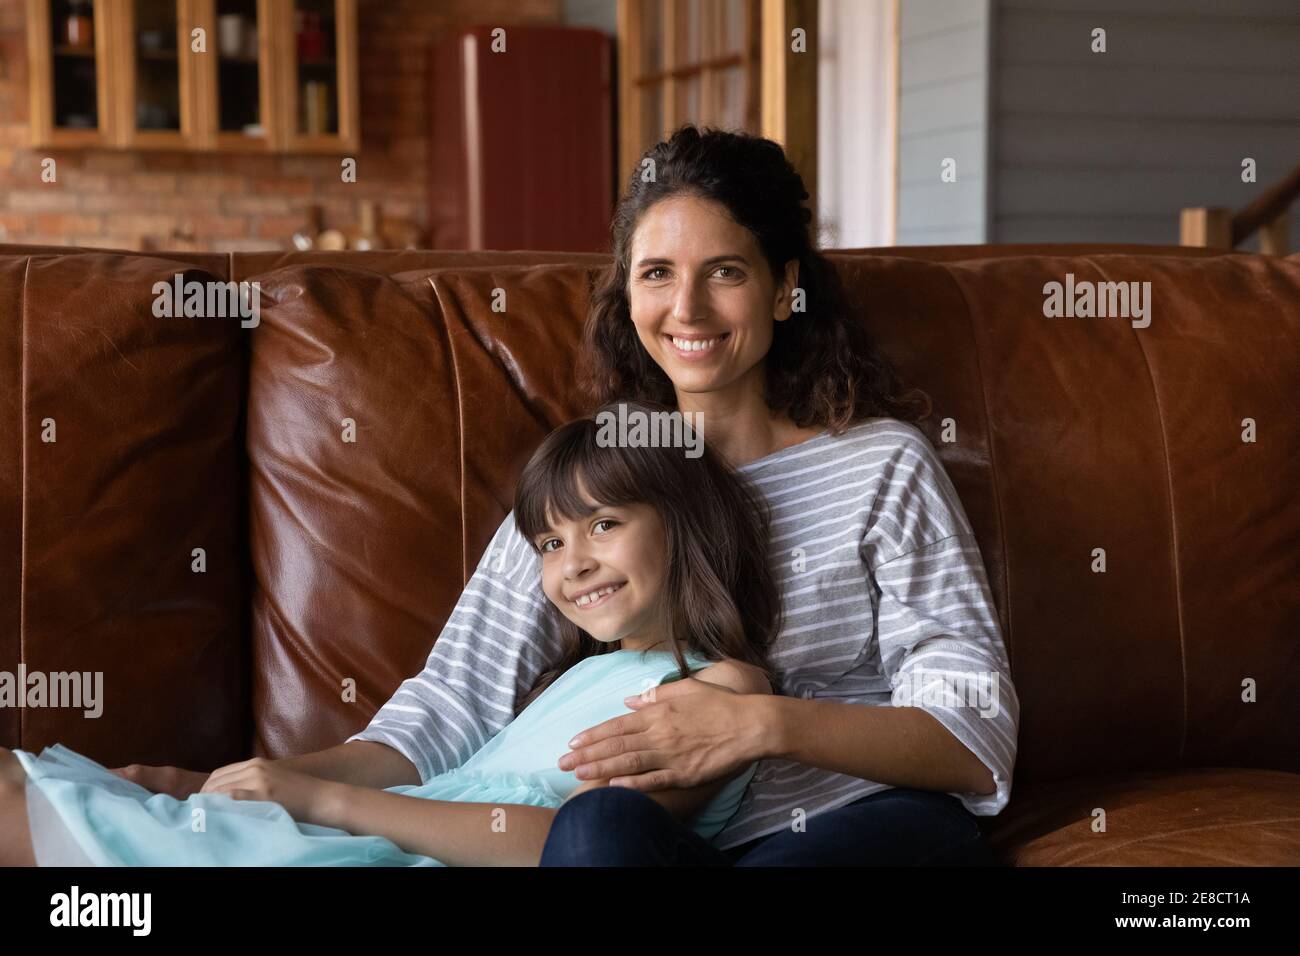 La testa ha girato il ritratto sorridendo la madre e la bambina che abbracciano Foto Stock